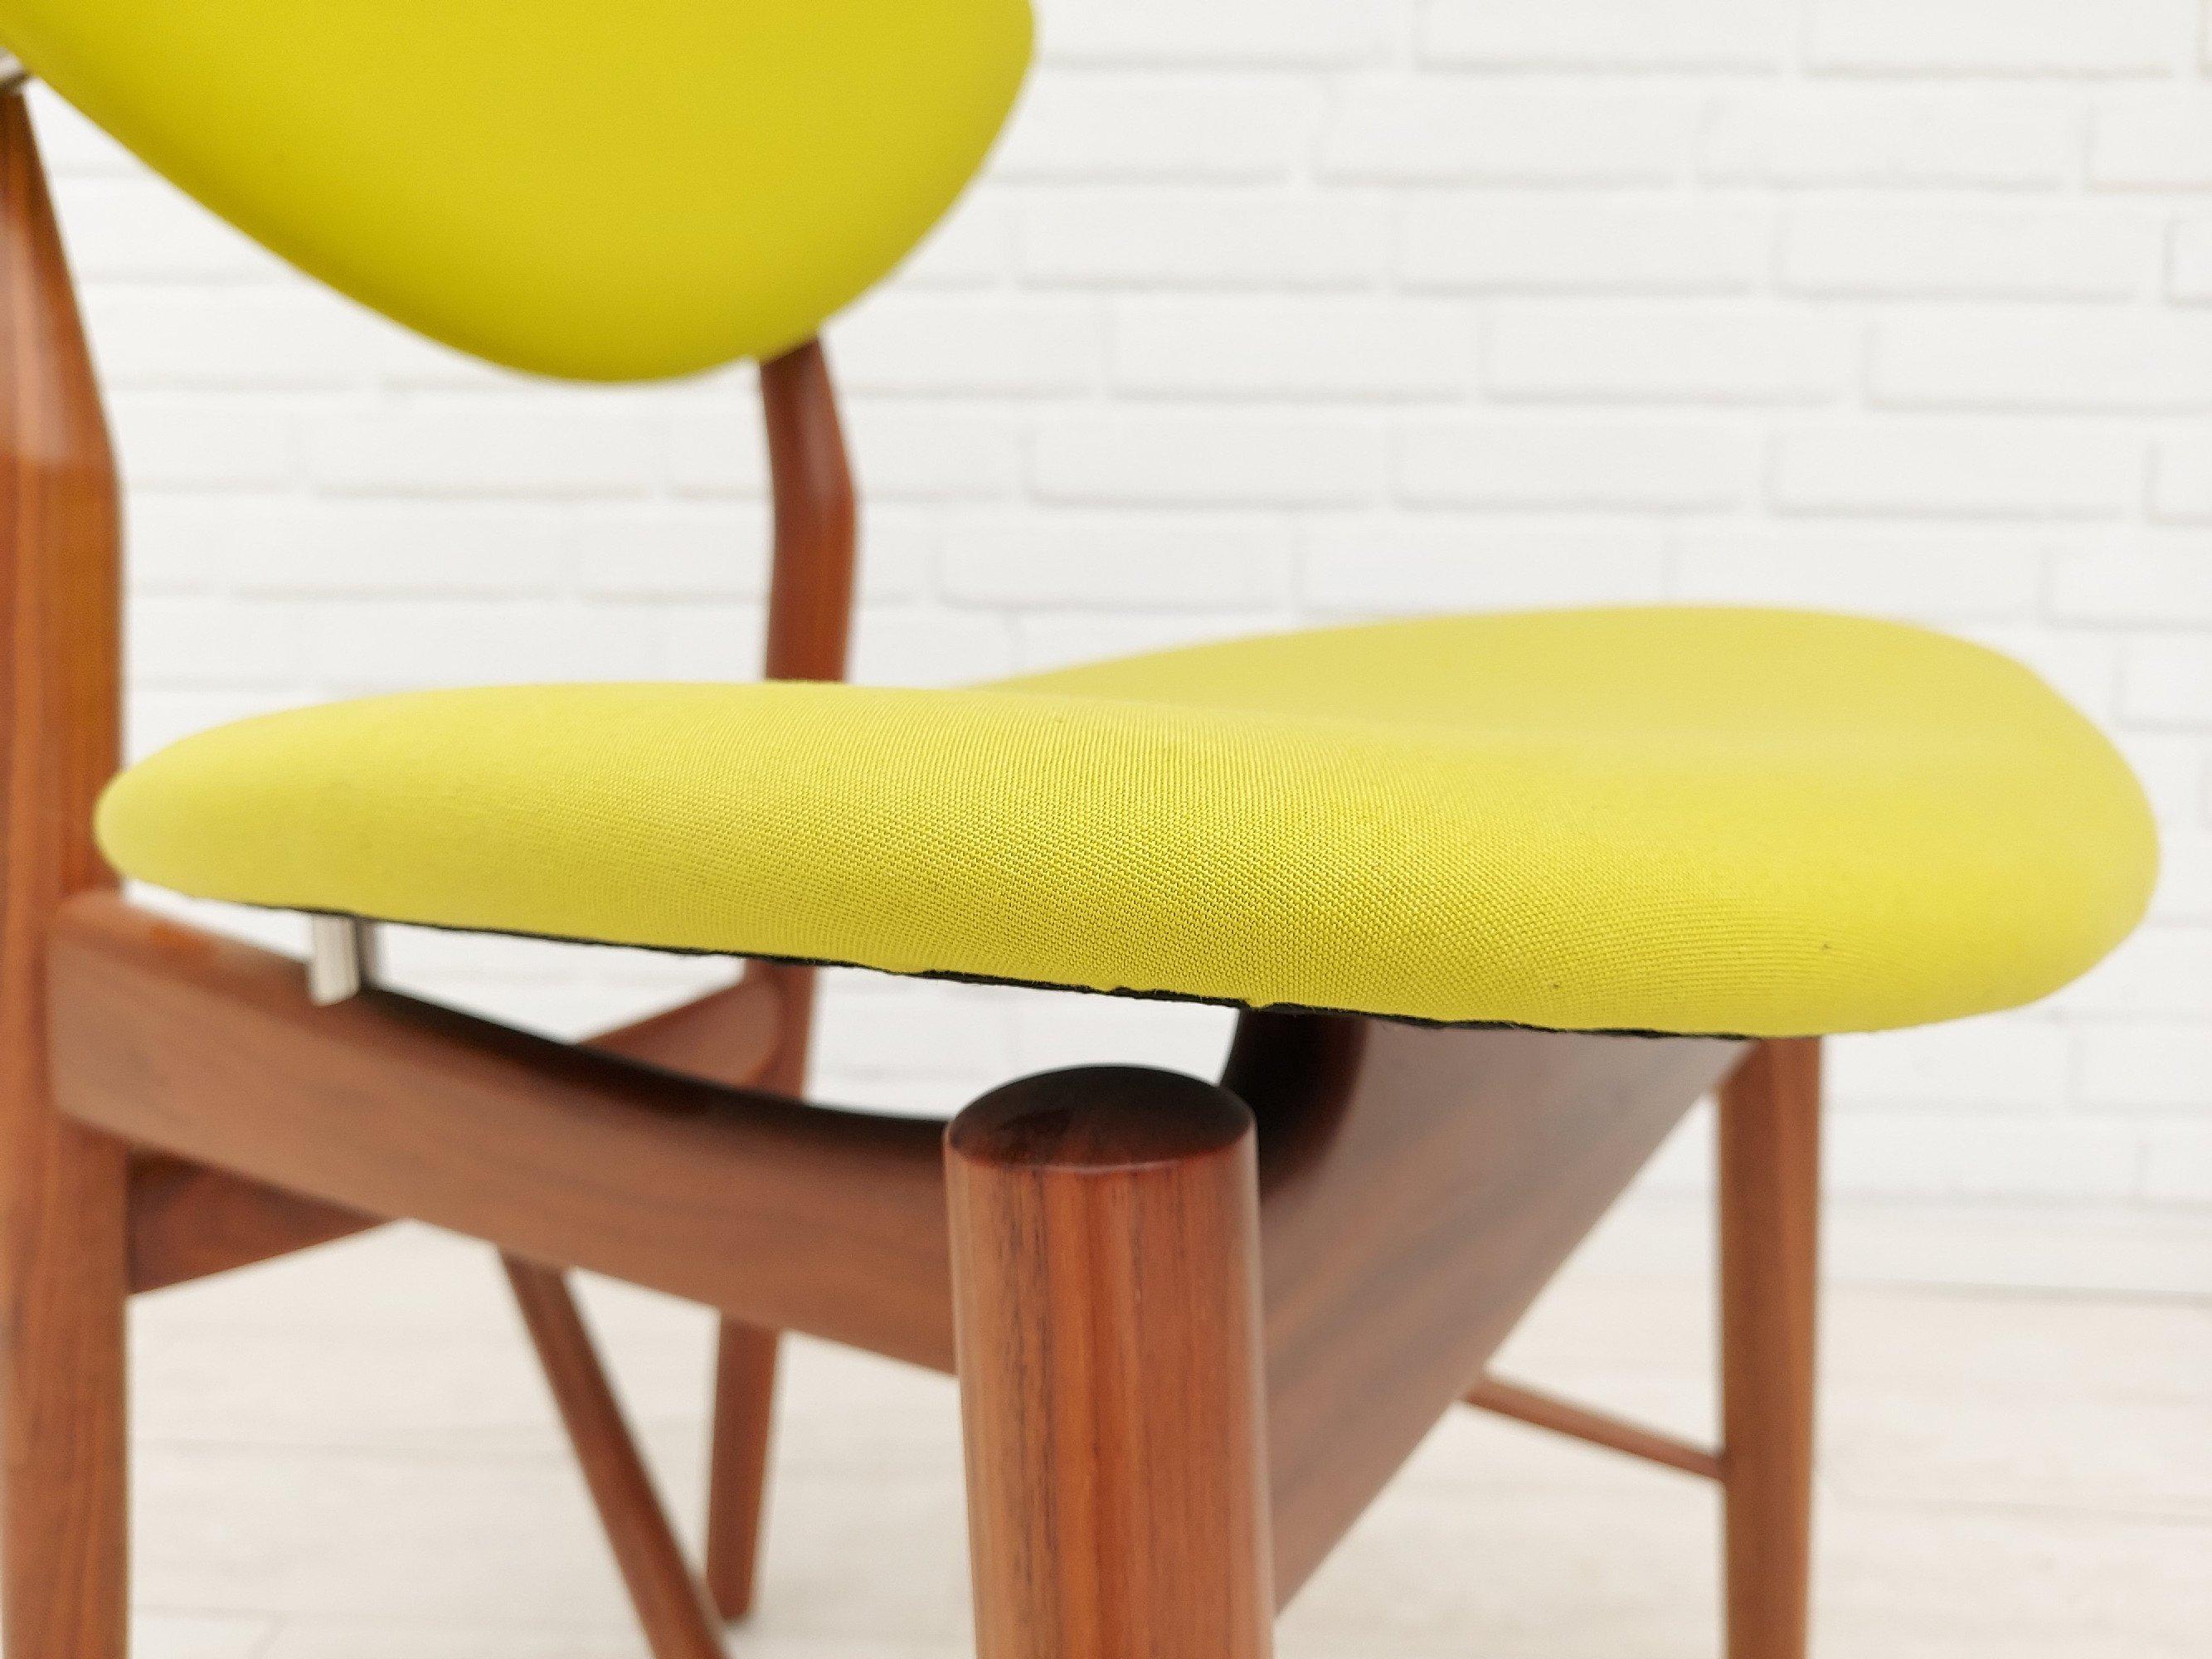 Scandinavian Modern Danish Design by Finn Juhl, Chair Model 108, Walnut Wood